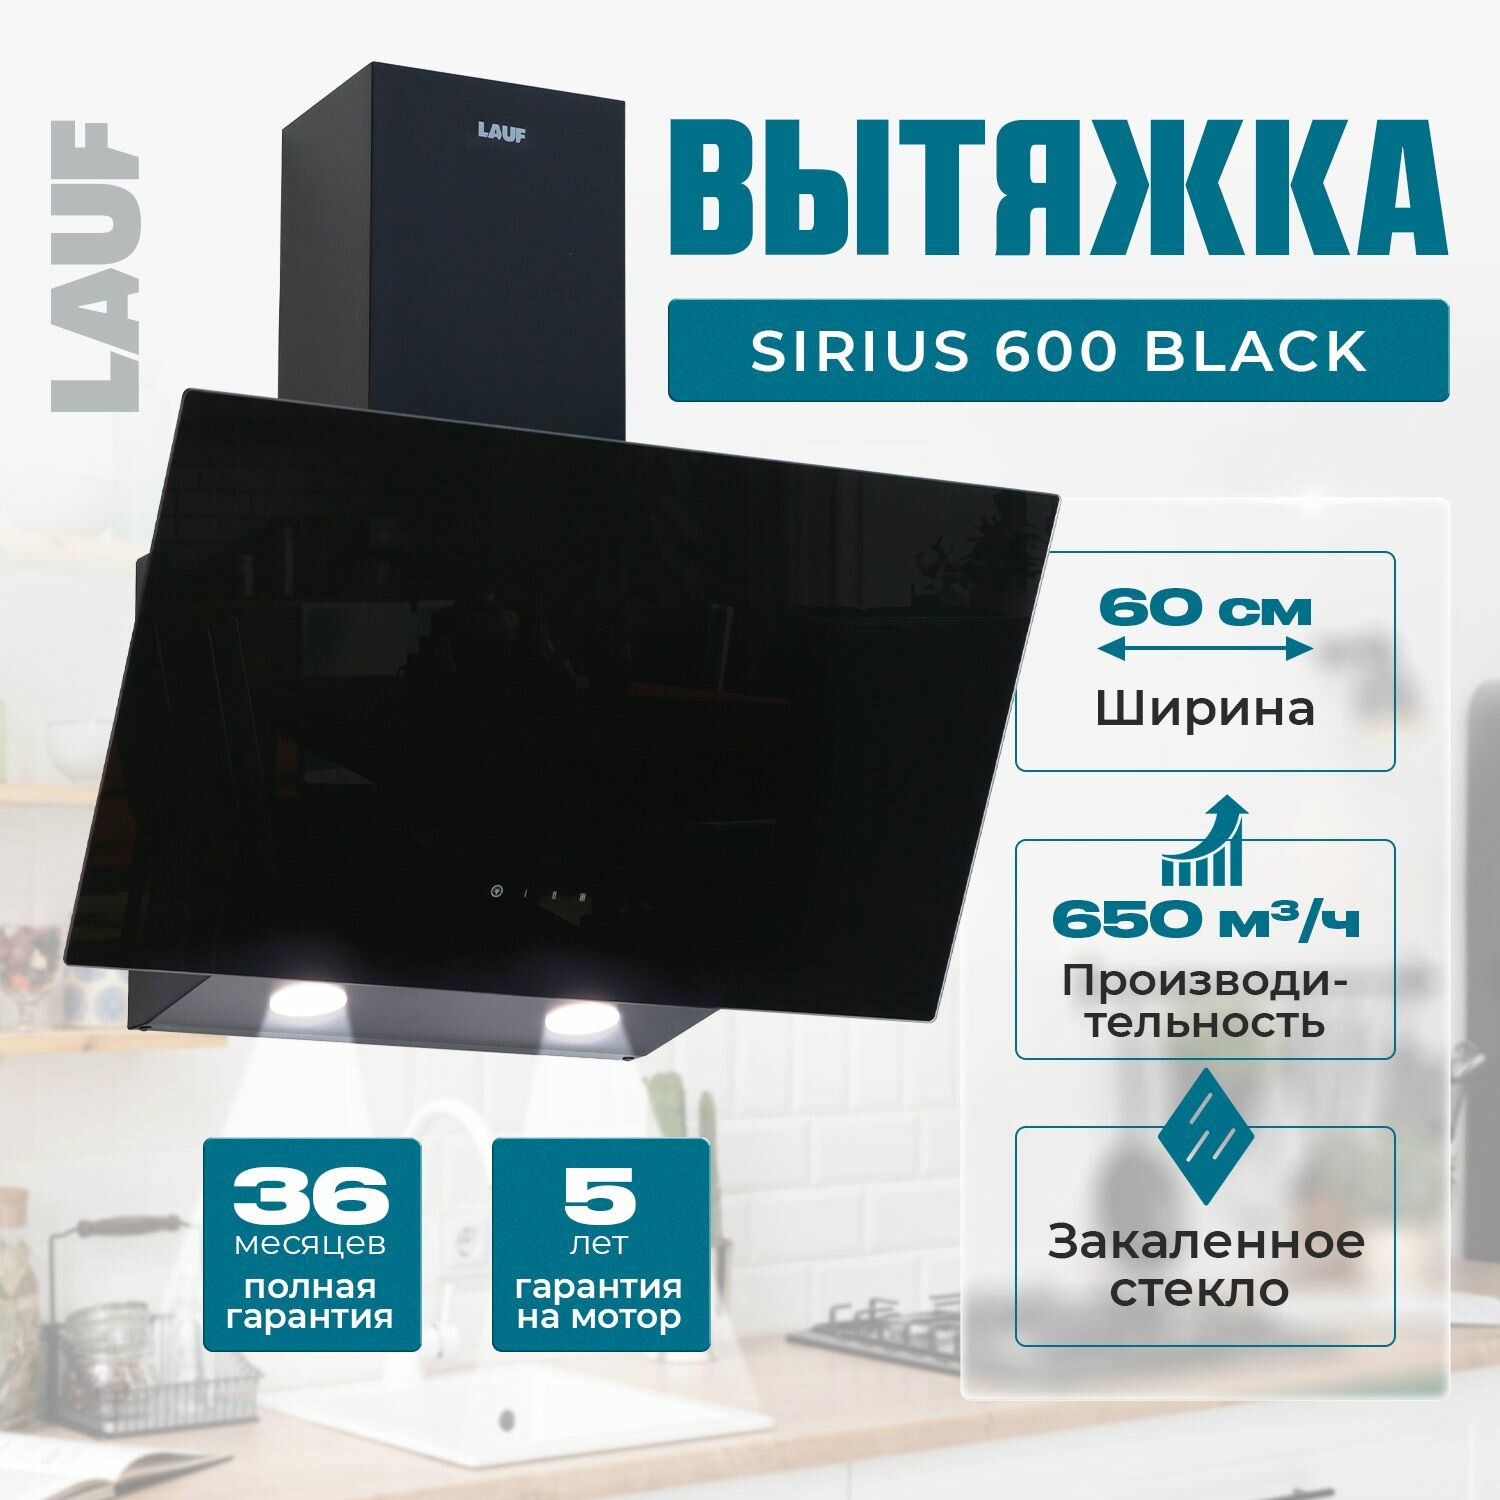 Вытяжка кухонная наклонная LAUF SIRIUS 600 BLACK/60 см/производительность 650м3/ч, низкий уровень шума.